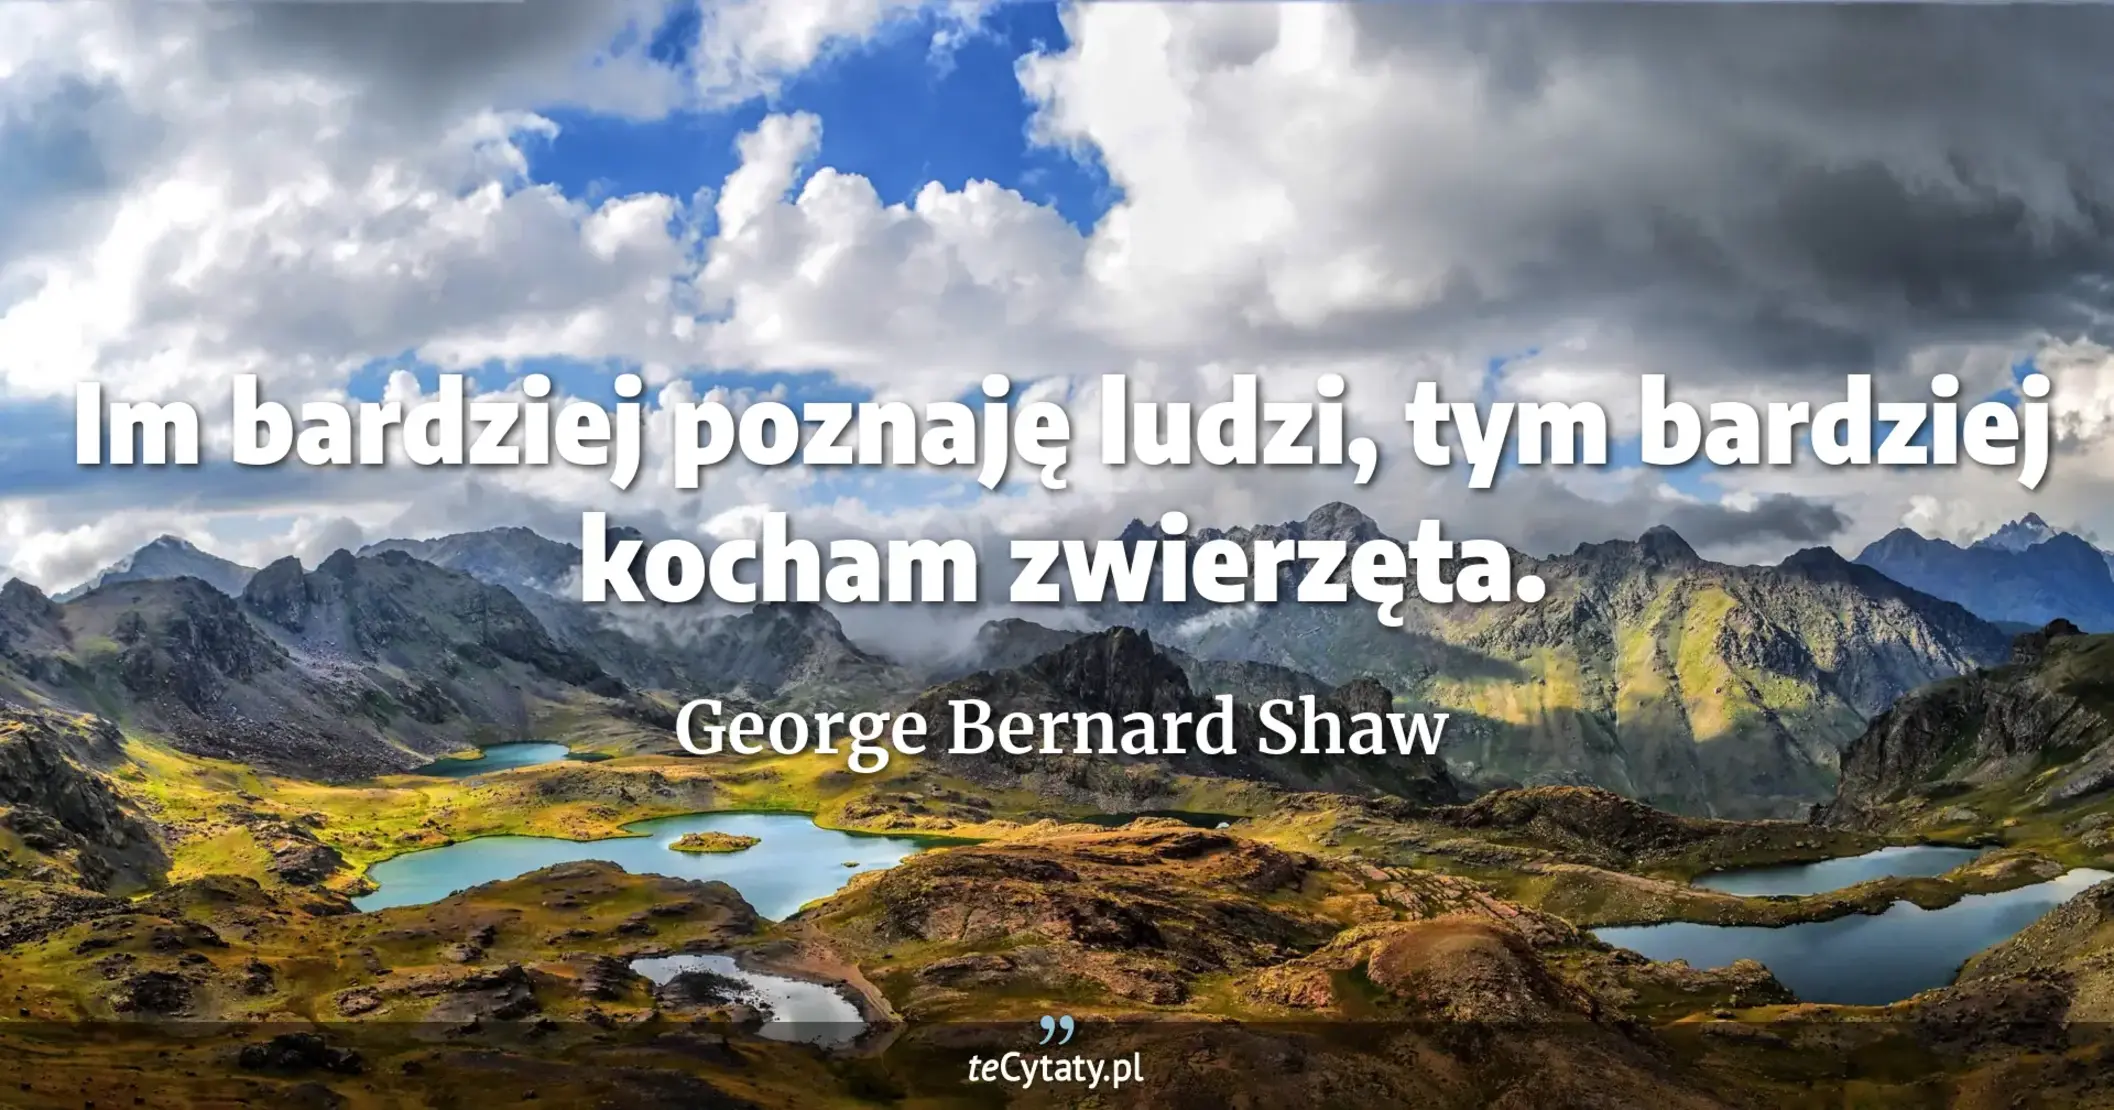 Im bardziej poznaję ludzi, tym bardziej kocham zwierzęta. - George Bernard Shaw